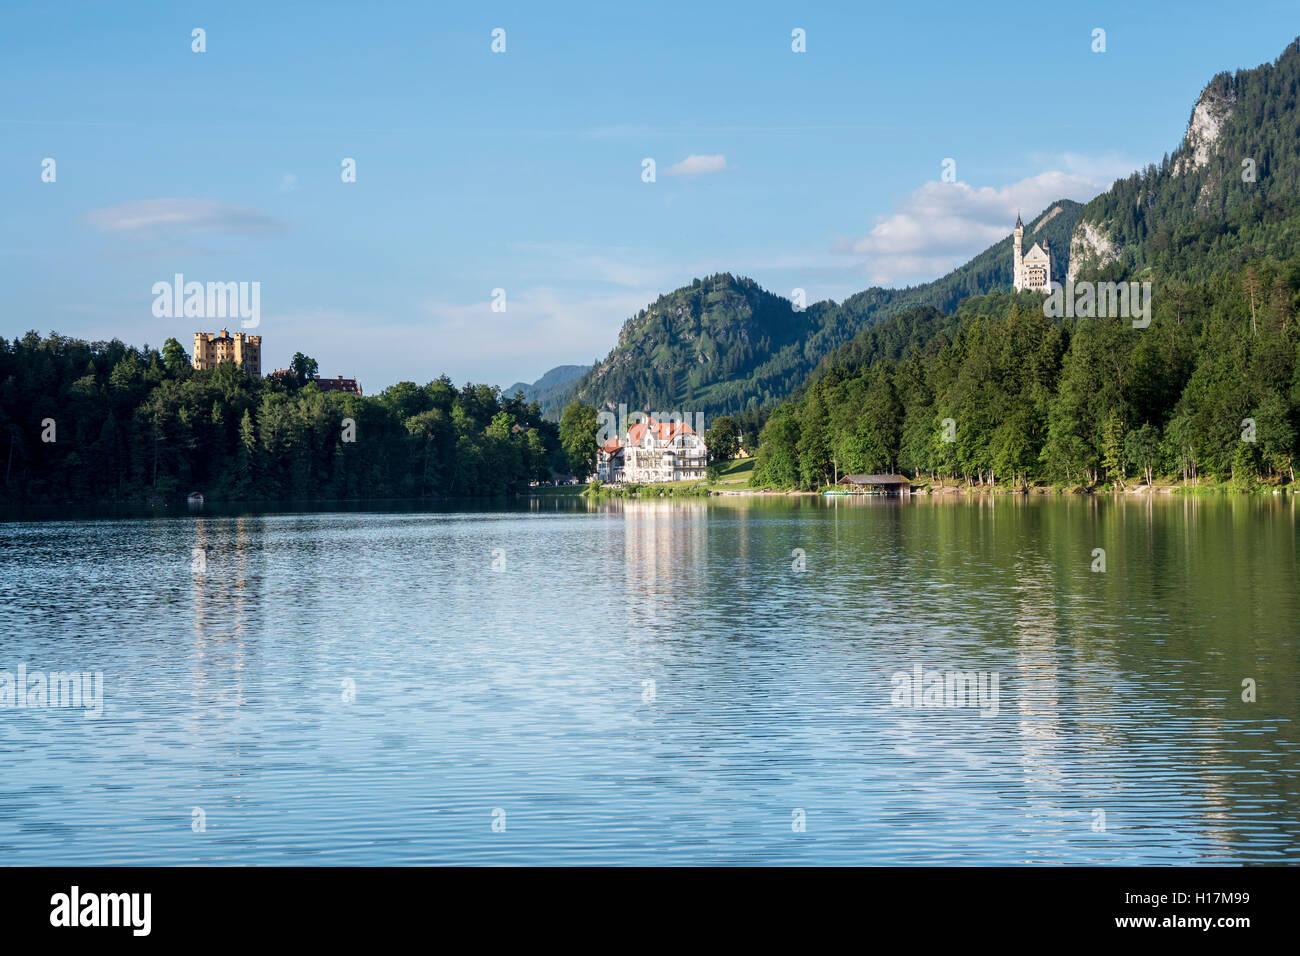 Deux châteaux, le château Neuschwanstein et Hohenschwangau Castel vu à travers le lac Alpsee, Schwangau, Bavière, Allemagne Banque D'Images